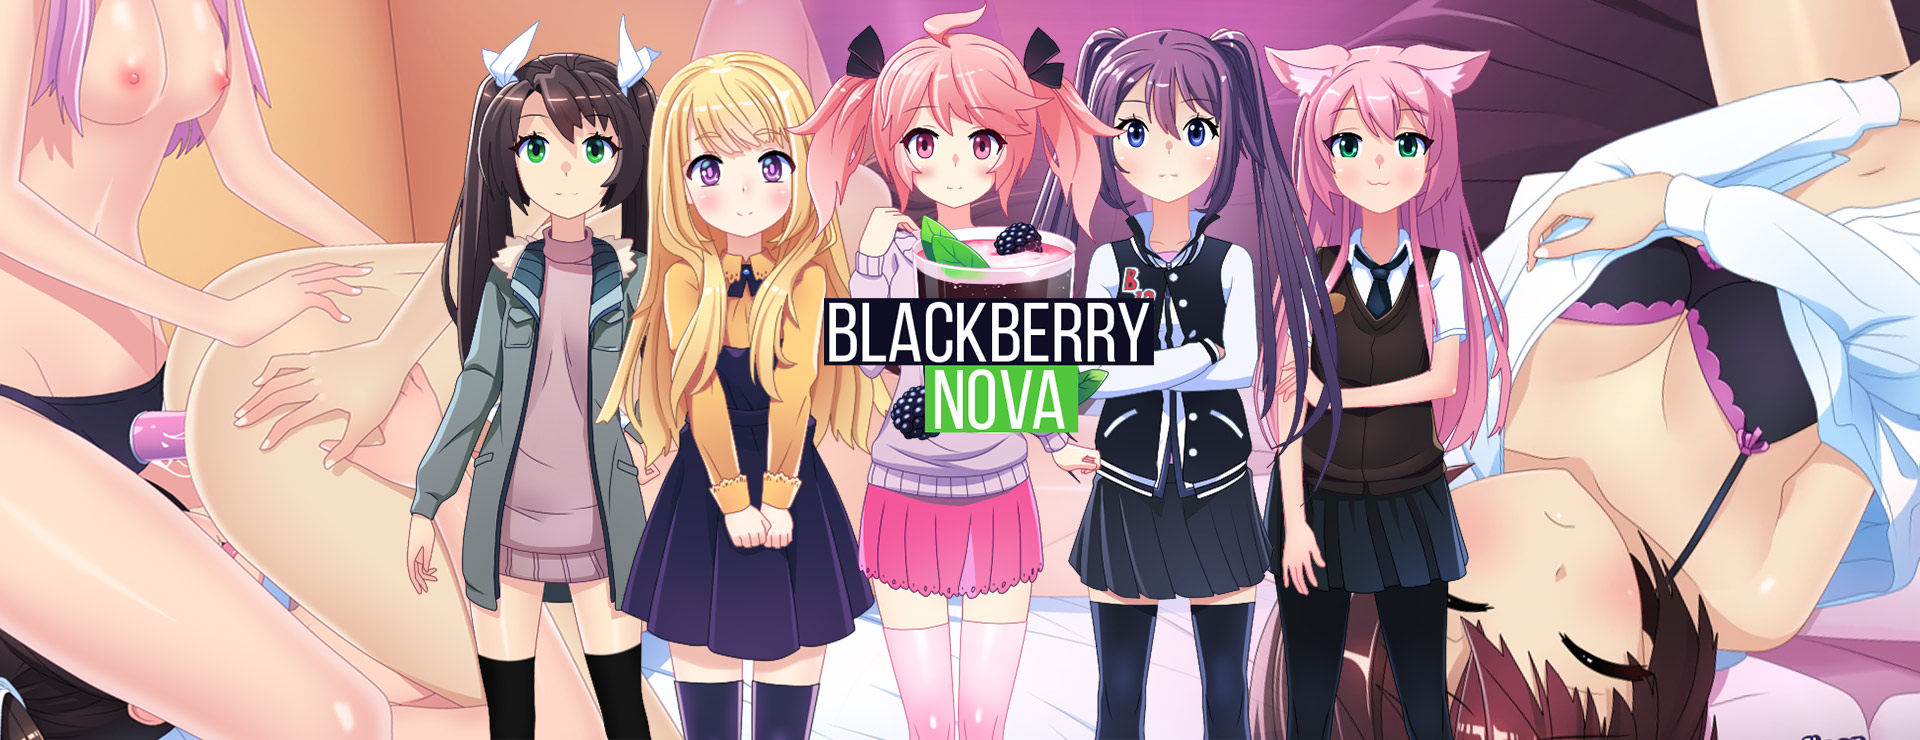 BlackberryNOVA - Novela Visual Juego